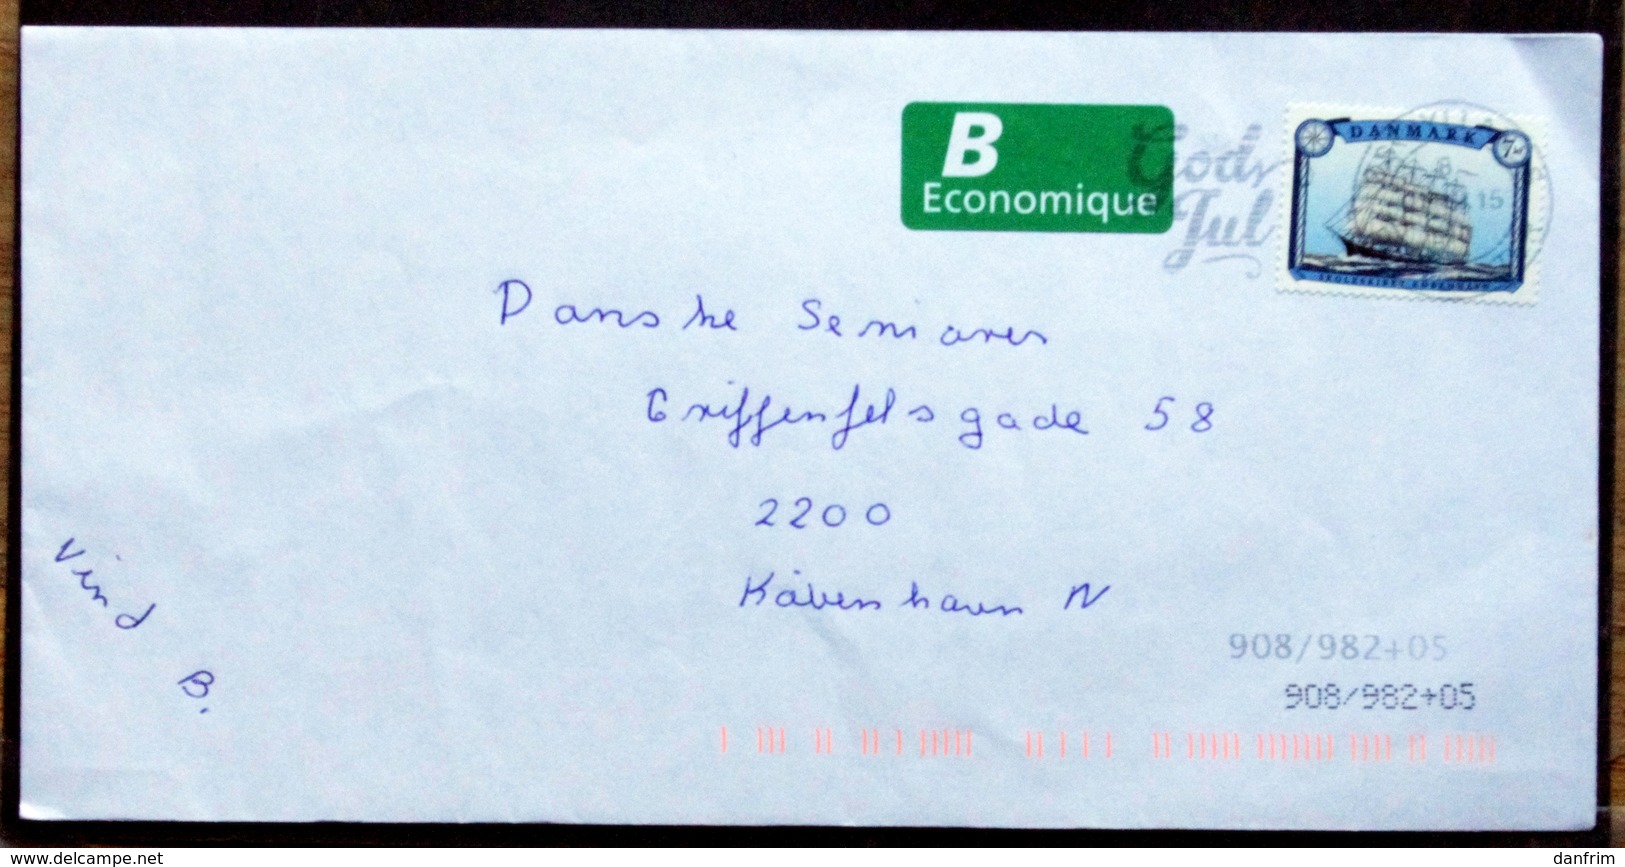 Denmark Letter 2015  Minr. 1843  ( Lot 6607) - Lettres & Documents